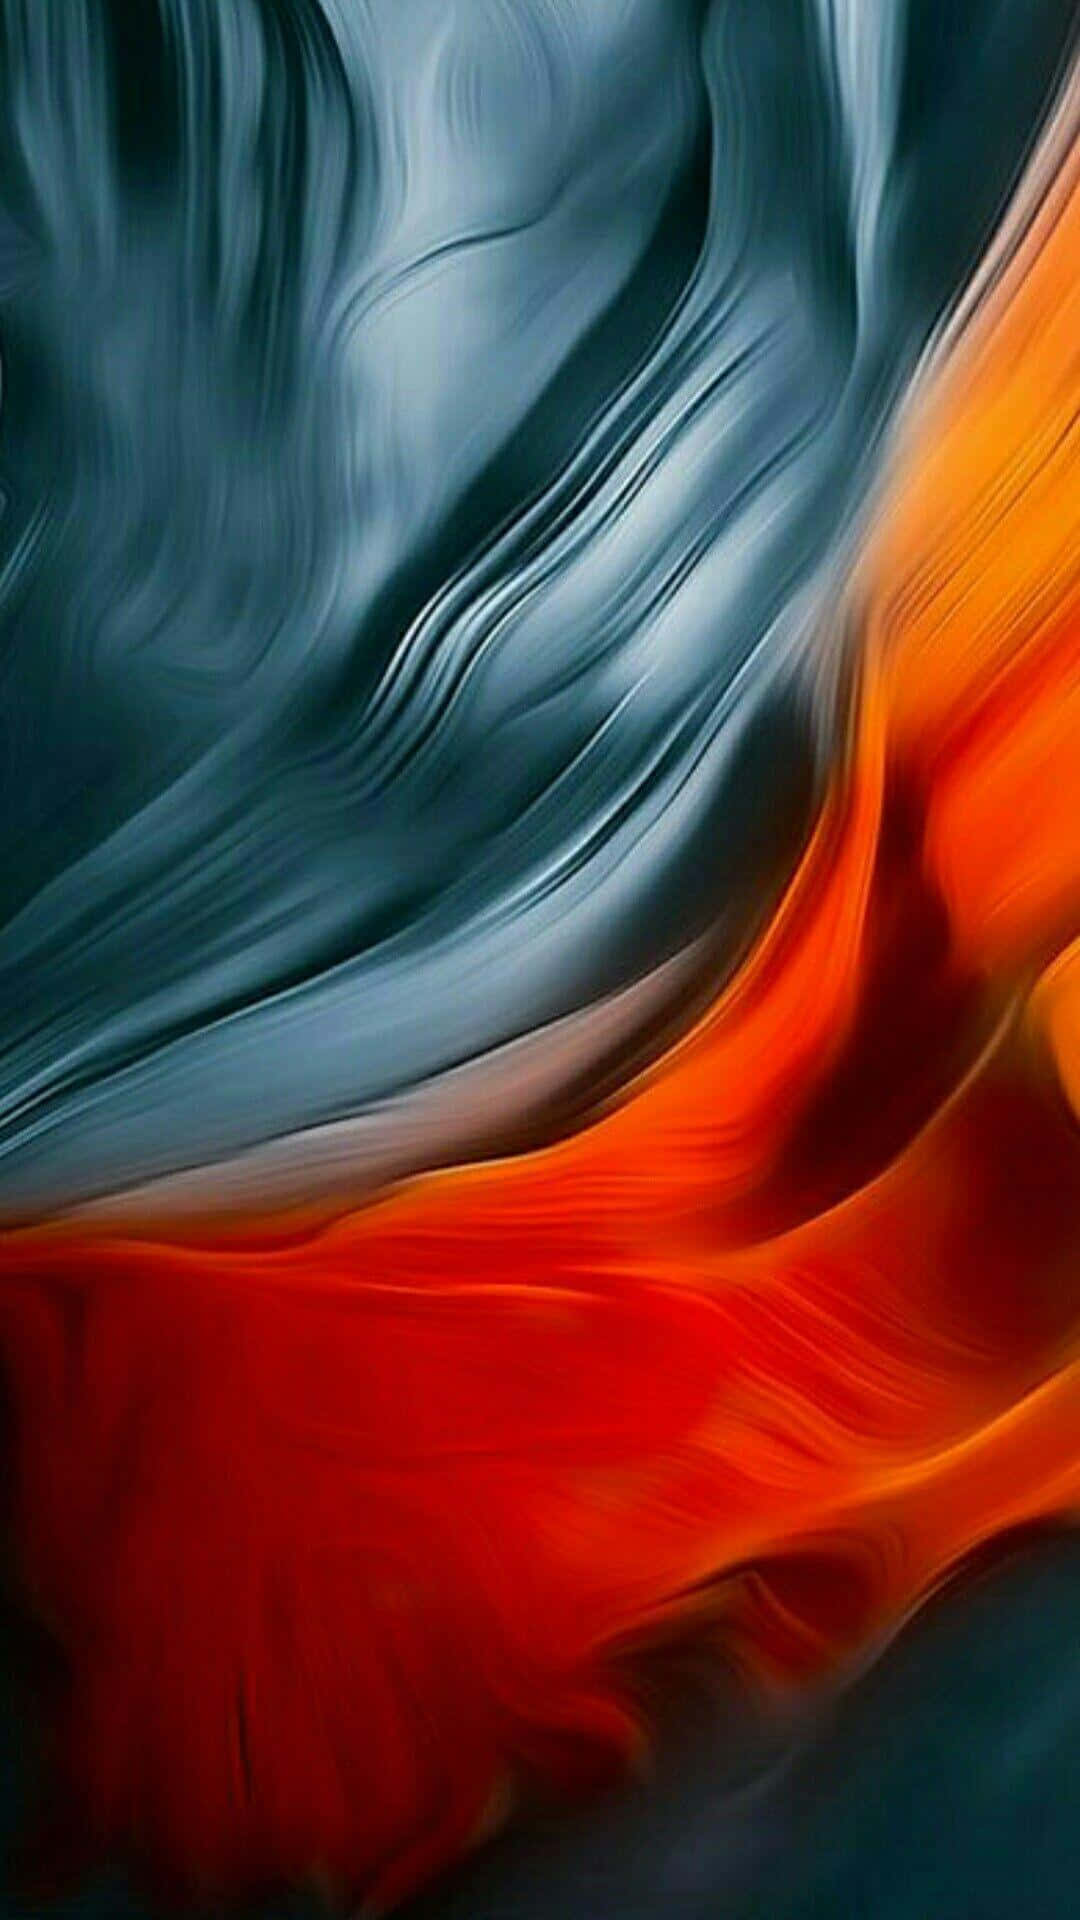 Aesthetic Blue&Orange Waves